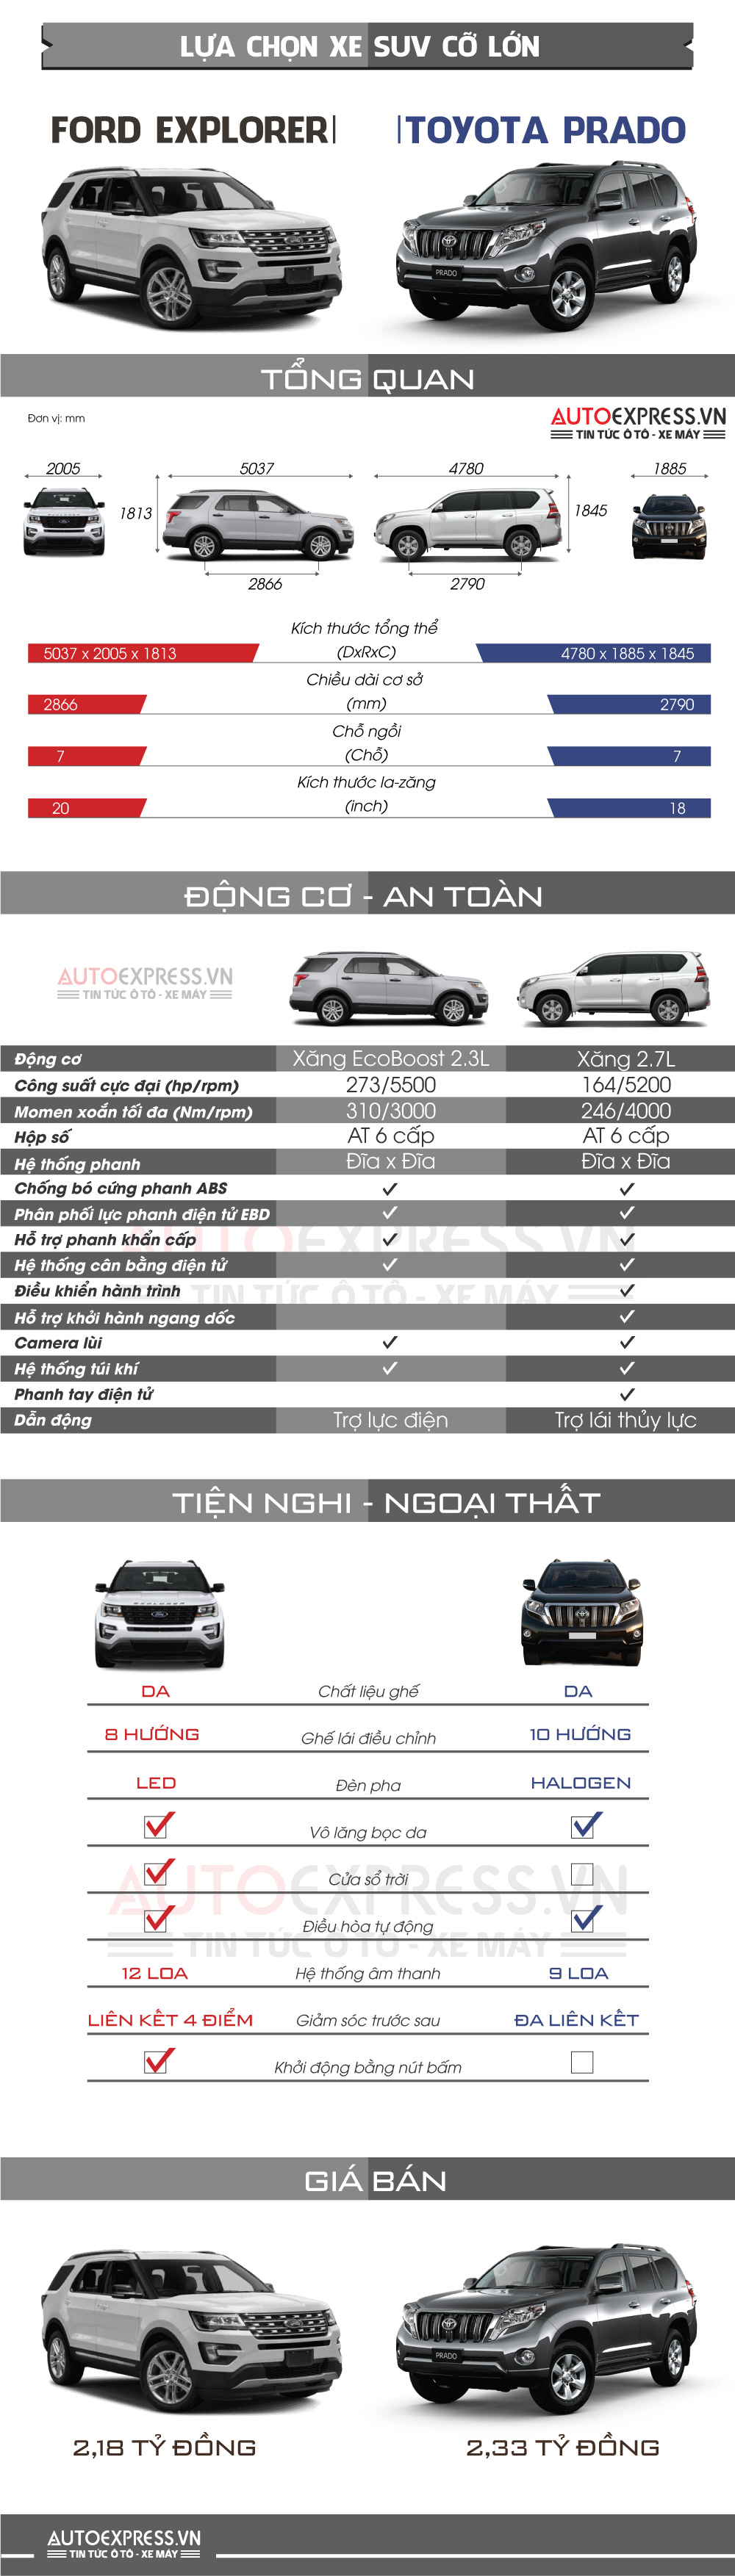 So sánh Toyota Land Cruiser Prado và Ford Explorer giá 2,2 tỷ đồng - Infographic